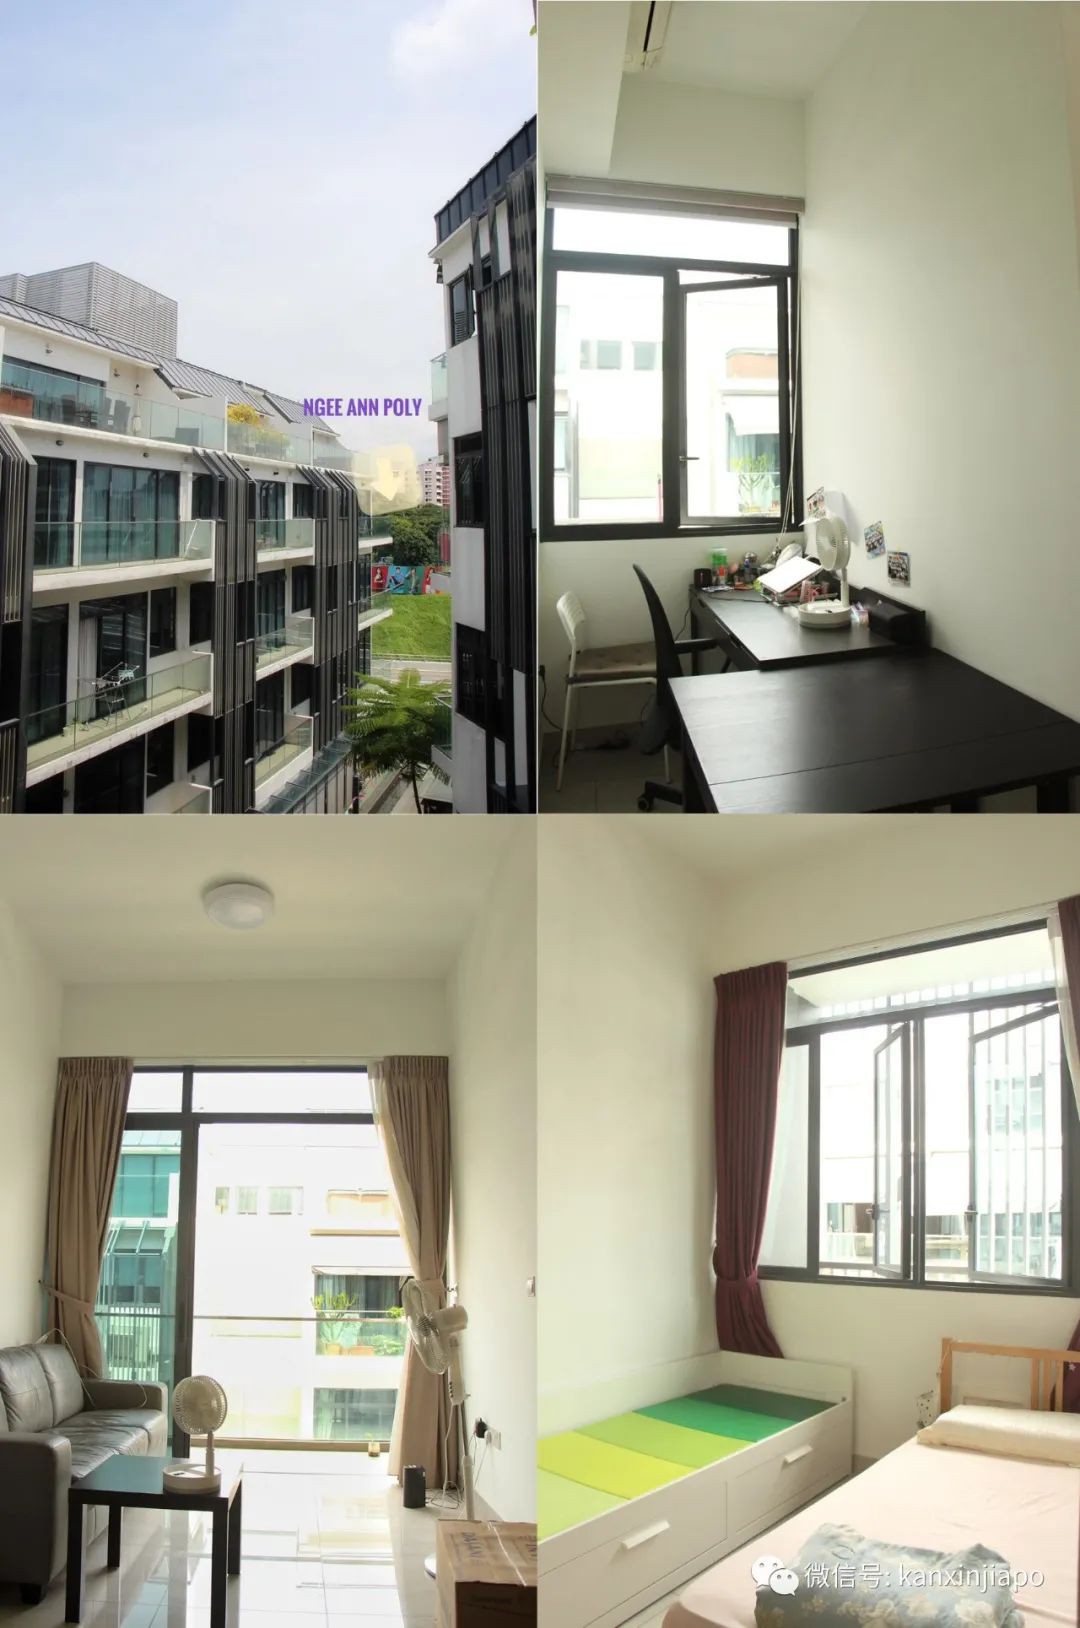 新加坡房屋出租求租信息彙總，找幹淨搭房、超大露台加落地窗